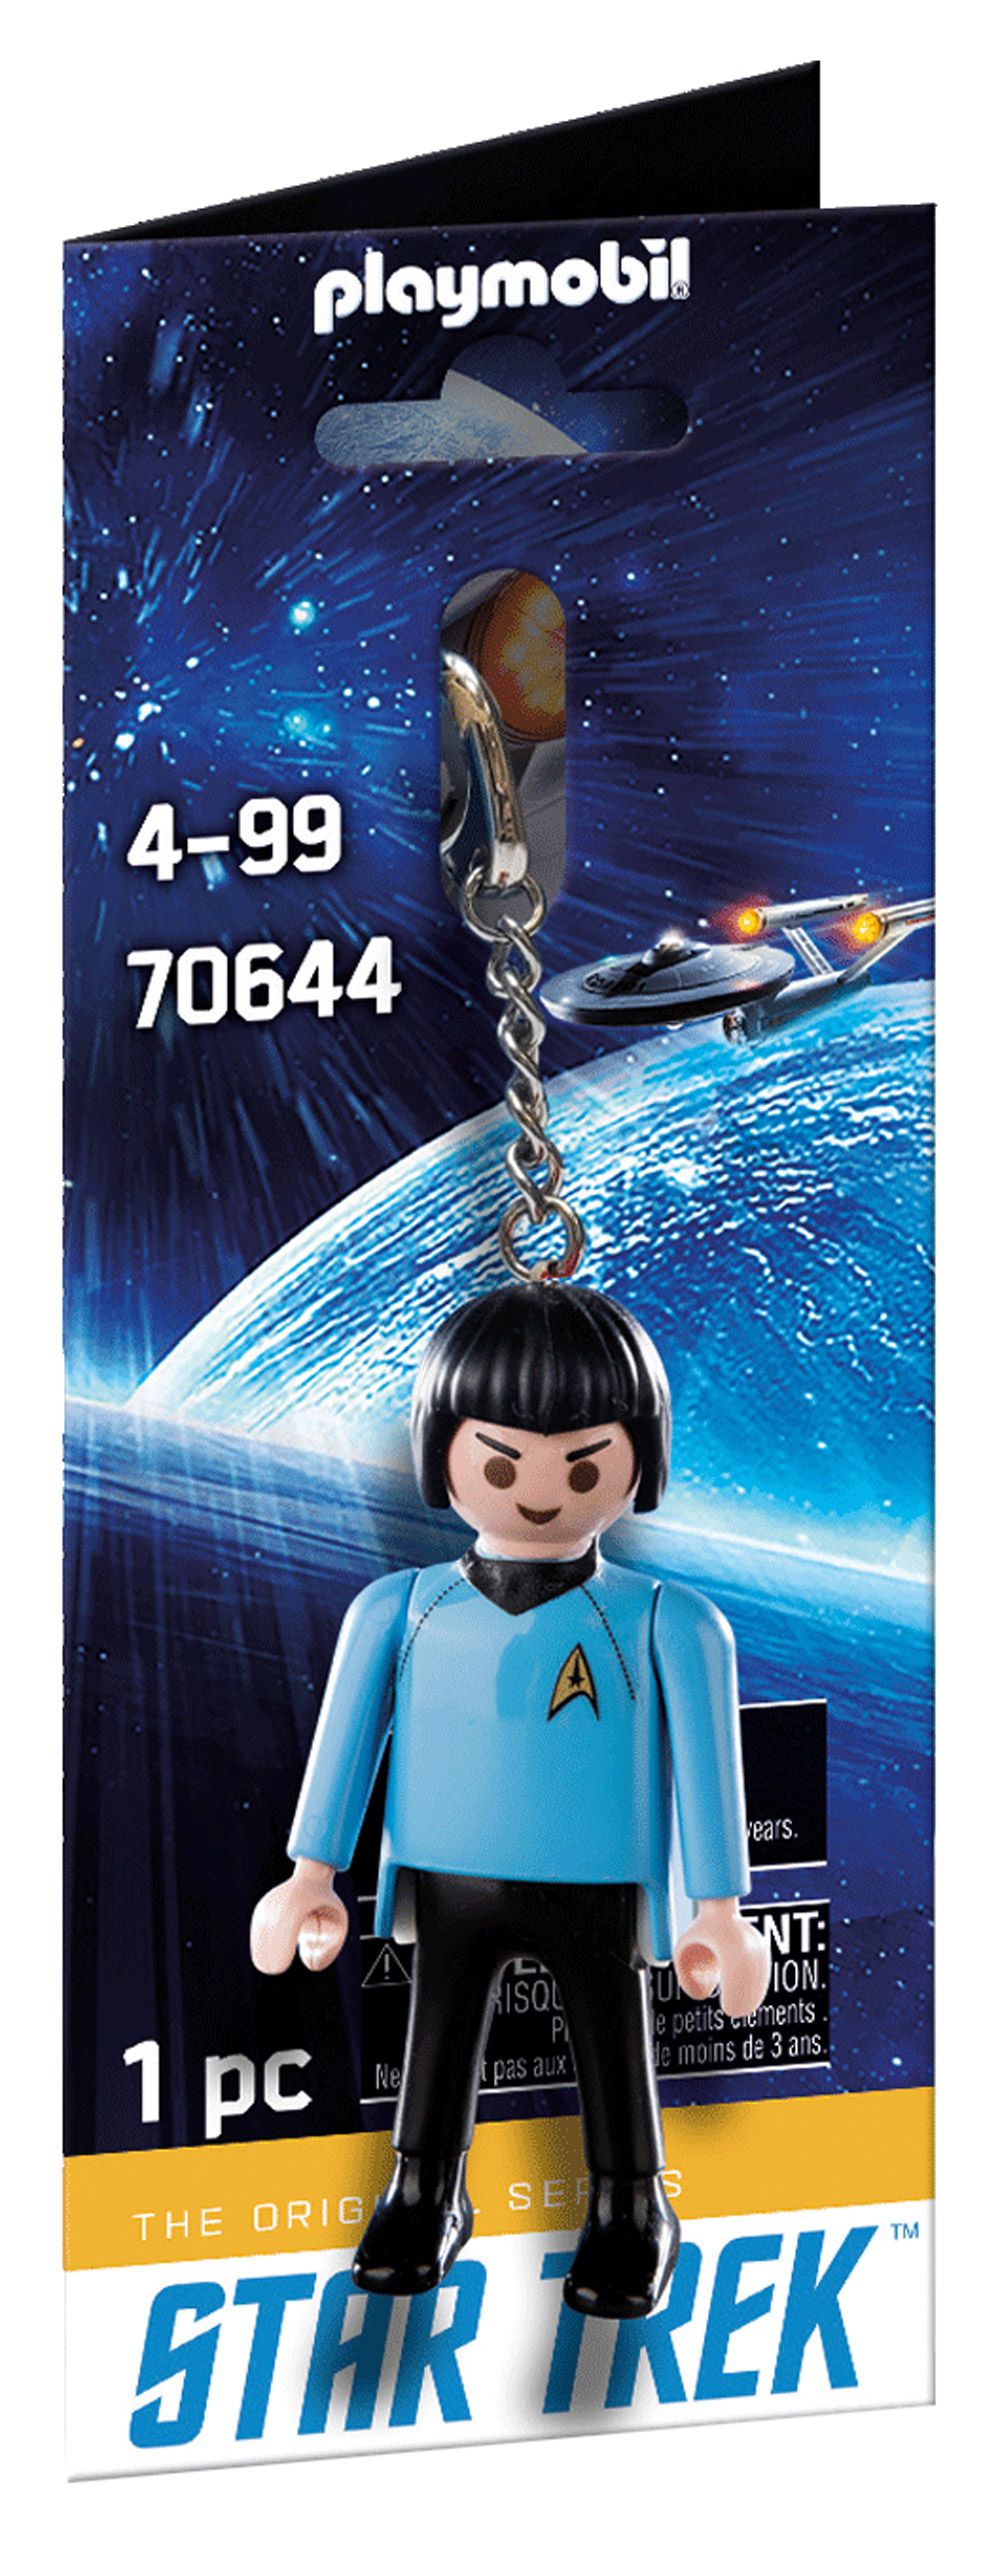 Playmobil Objets divers 70644 pas cher, Porte-clé Star Trek M.Spock